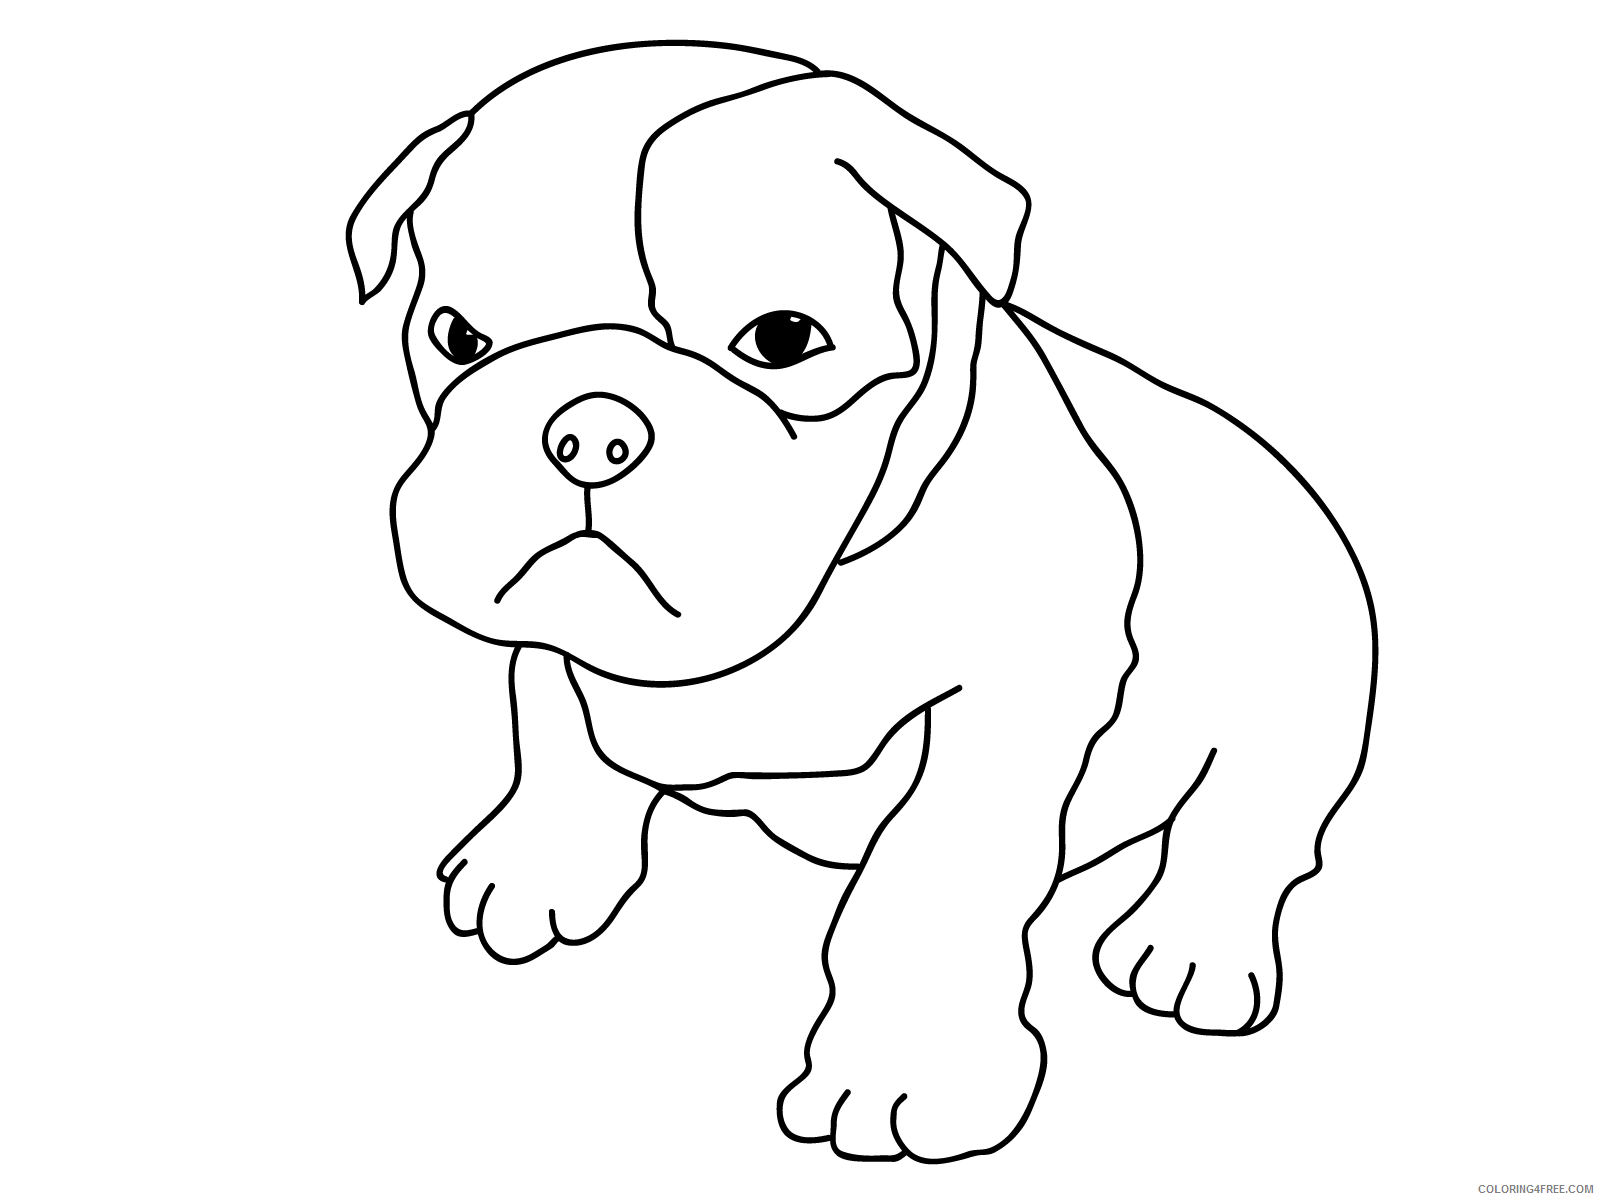 Bulldog Coloring Pages Animal Printable Sheets Bulldog Puppy 2021 0620 Coloring4free